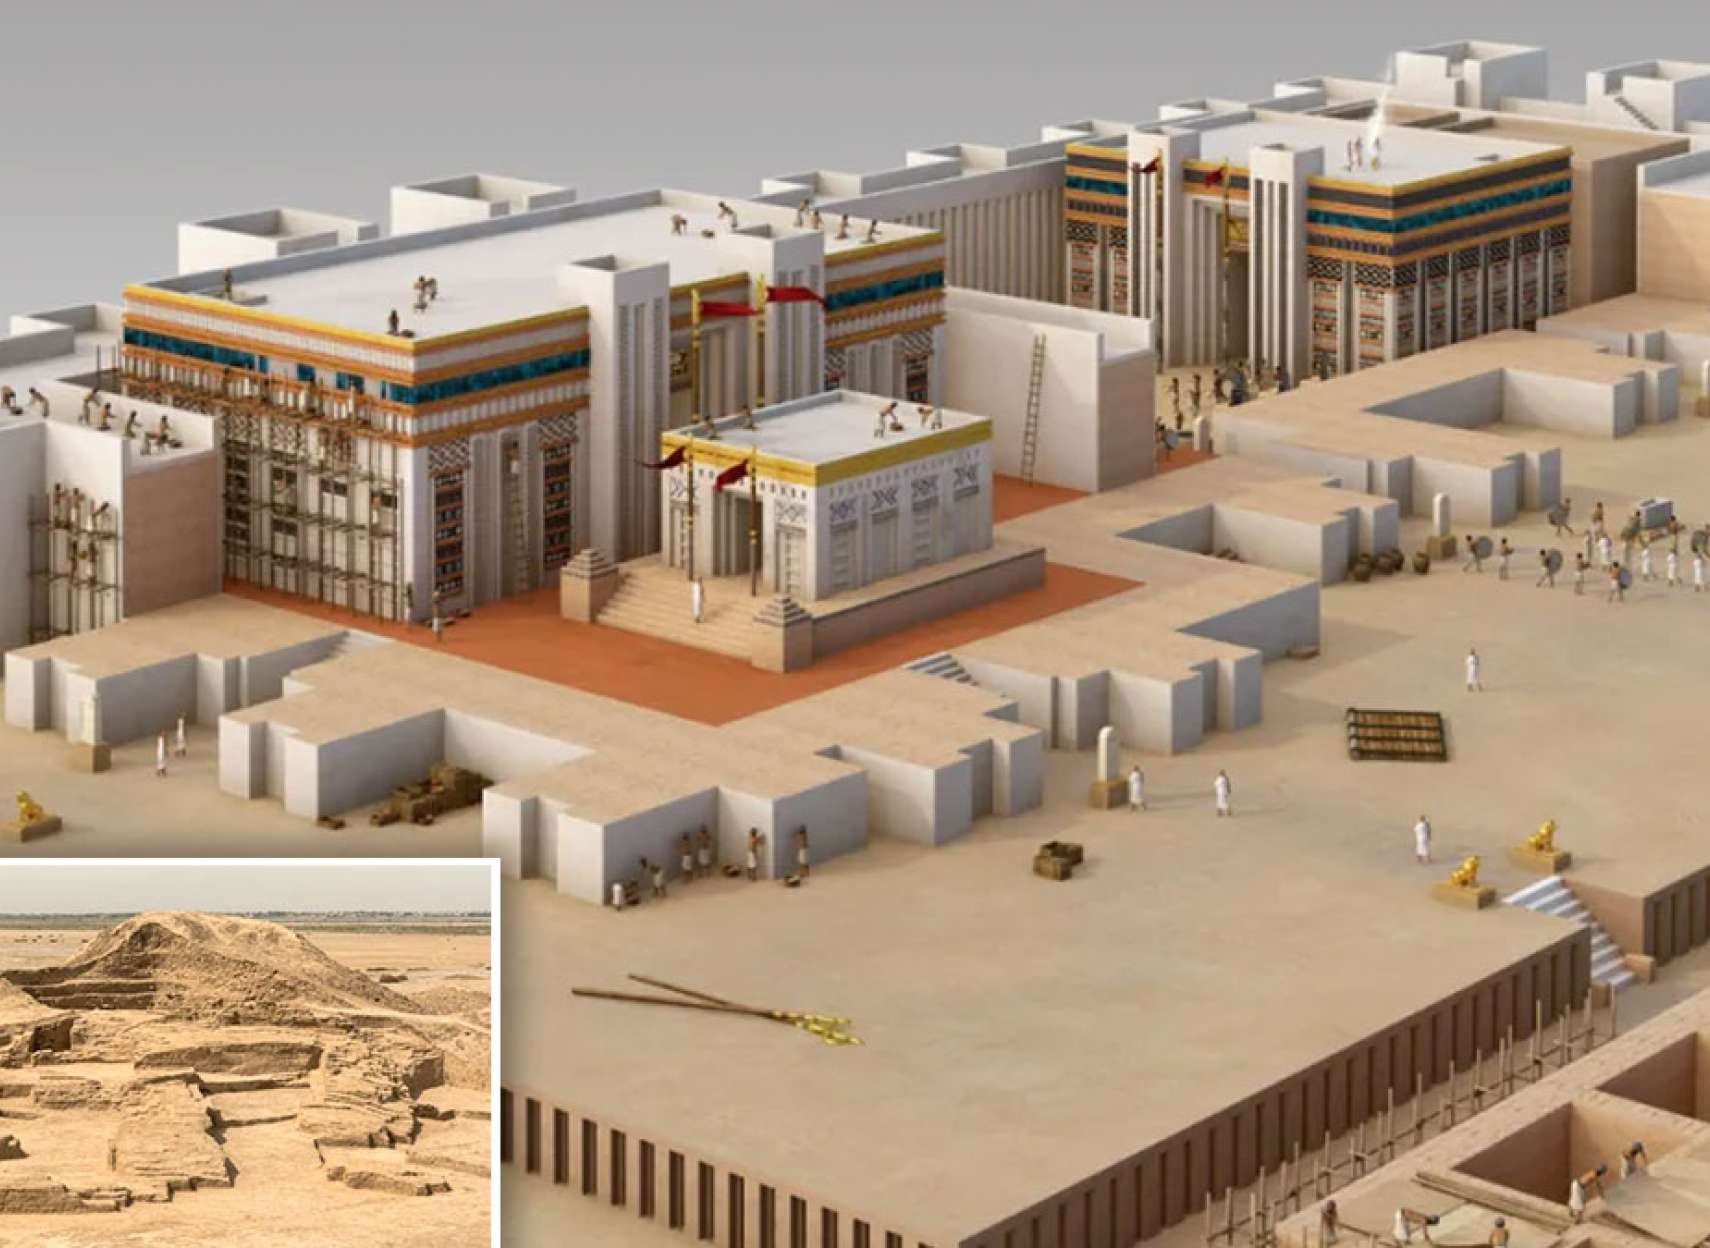 خبر-تاریخی-کشف-جدید-معبد-گمشده-محترم-شهر-۶۰۰۰-سال-شن-صحرا-عراق-سر